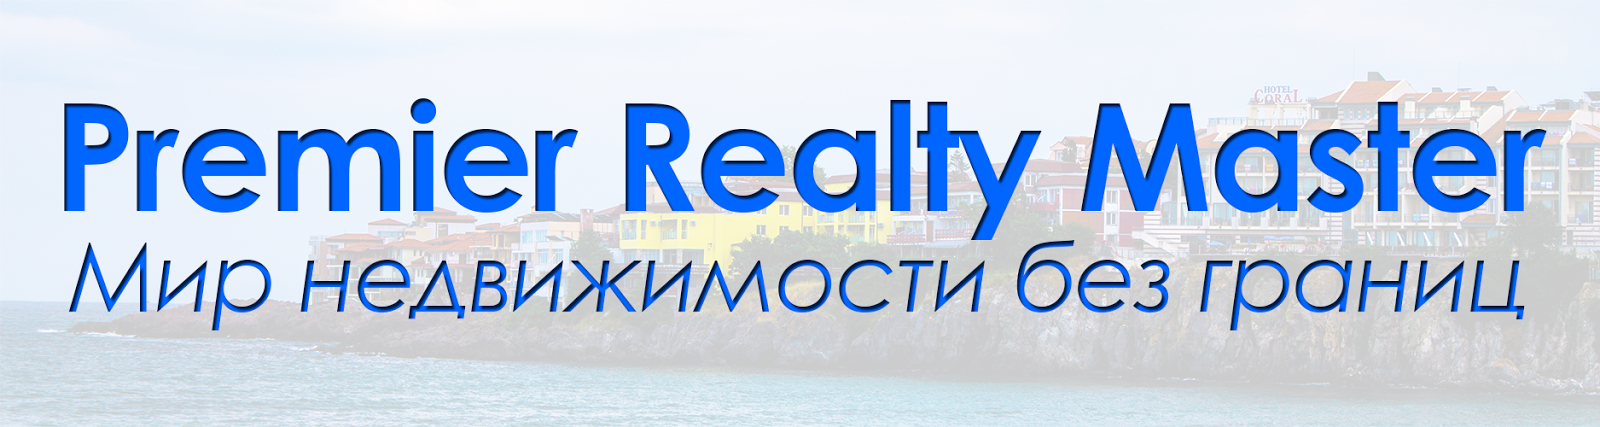 Premier Realty Master - Недвижимость в Болгарии